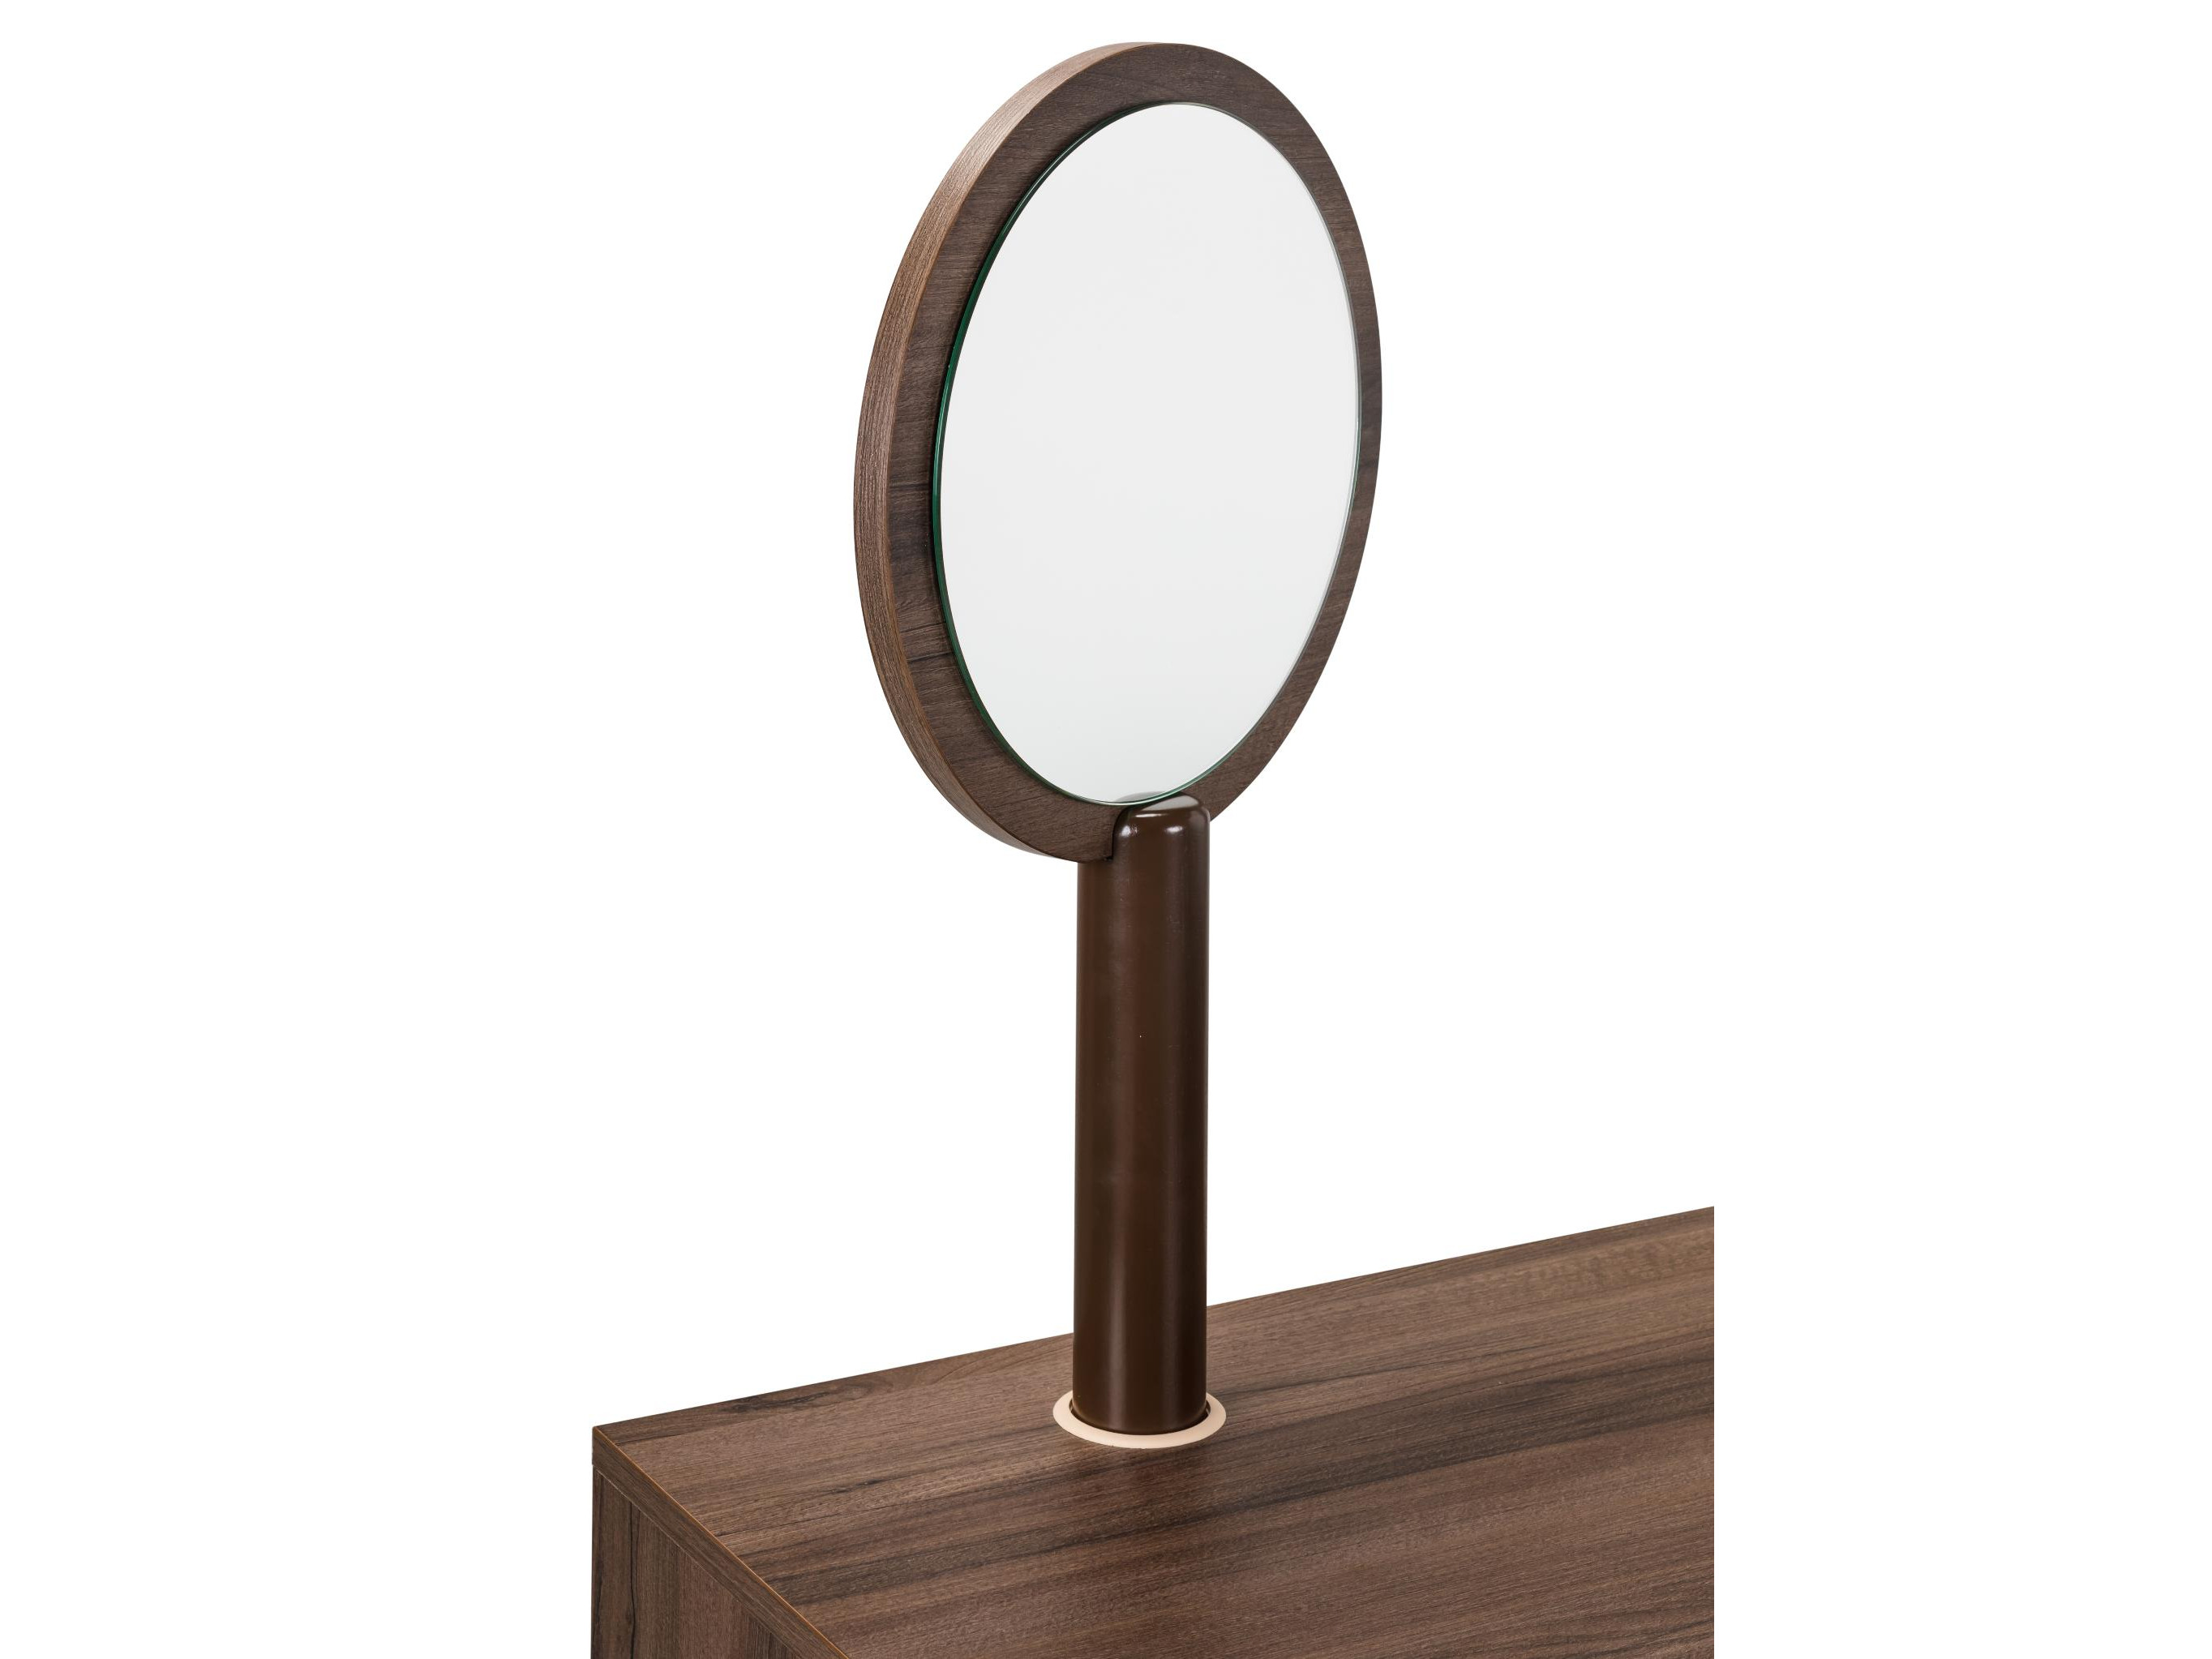 Зеркало для стола туалетного Сканди Орех Орех табак, Коричневый, ЛДСП зеркало элизабет орех темный коричневый мдф зеркало лдсп